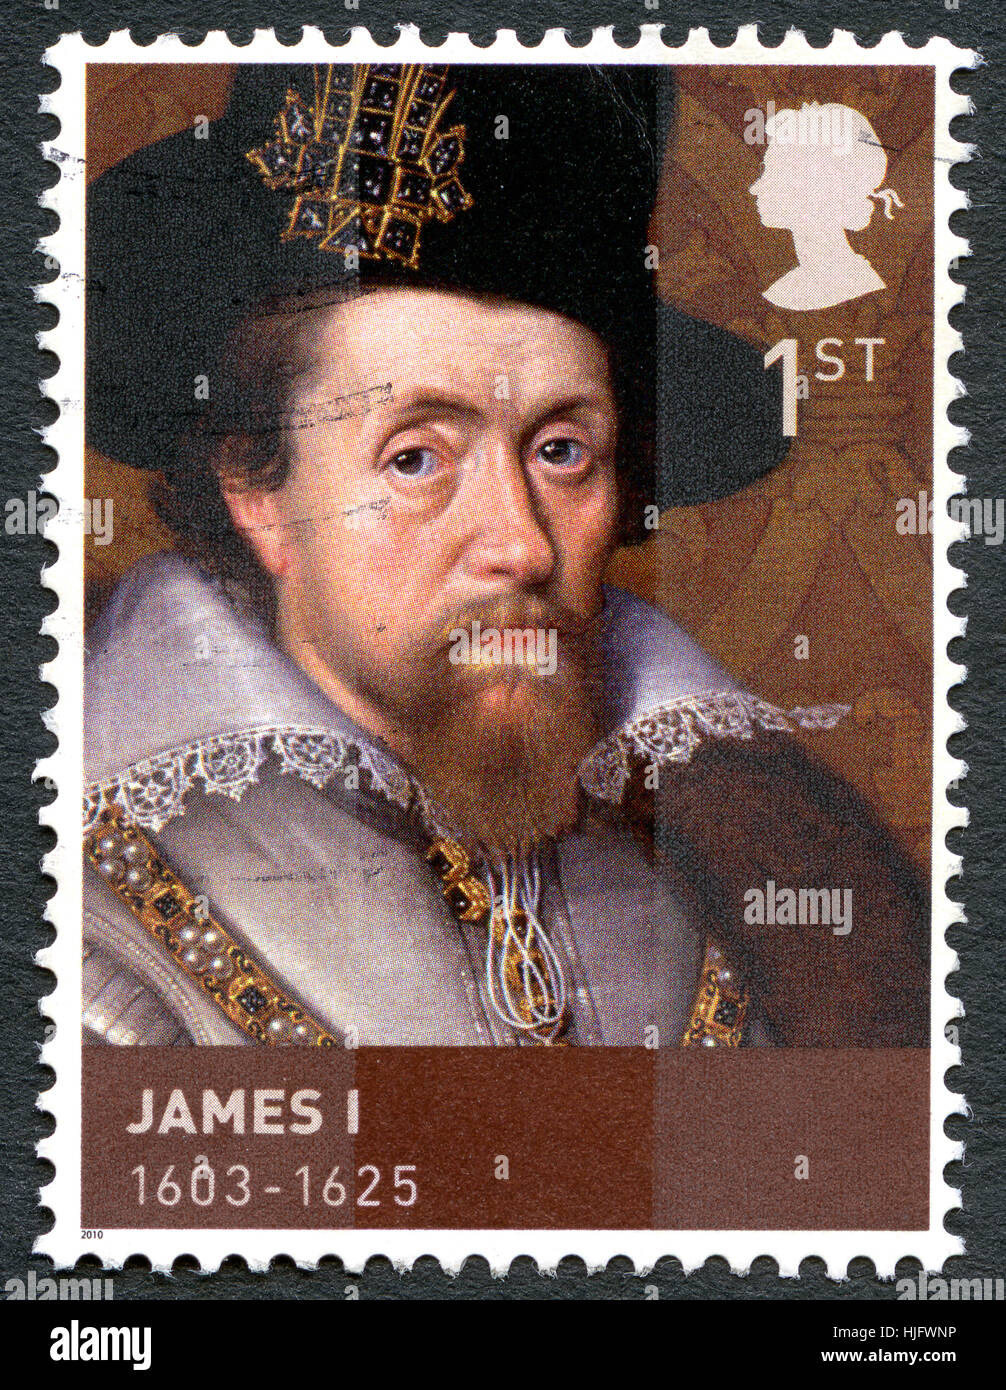 Vereinigtes Königreich - ca. 2010: Eine gebrauchte Briefmarke aus dem Vereinigten Königreich, Darstellung zur Veranschaulichung der König James i., ca. 2010. Stockfoto